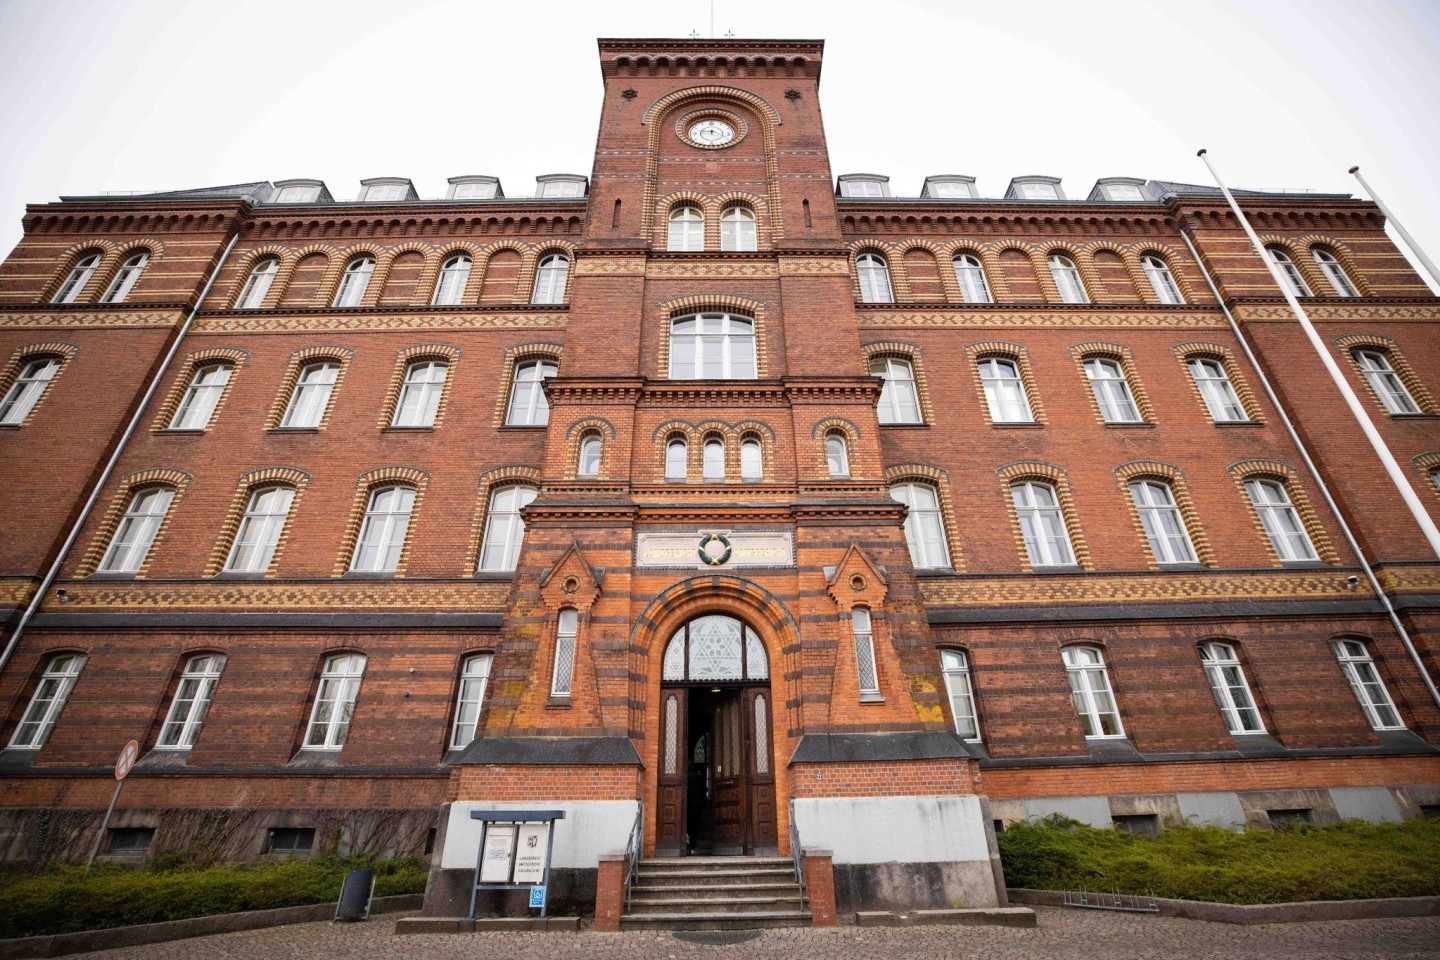 Außenansicht des Gerichtsgebäudes in Flensburg, in dem sich sowohl Land- als auch Amtsgericht befinden.